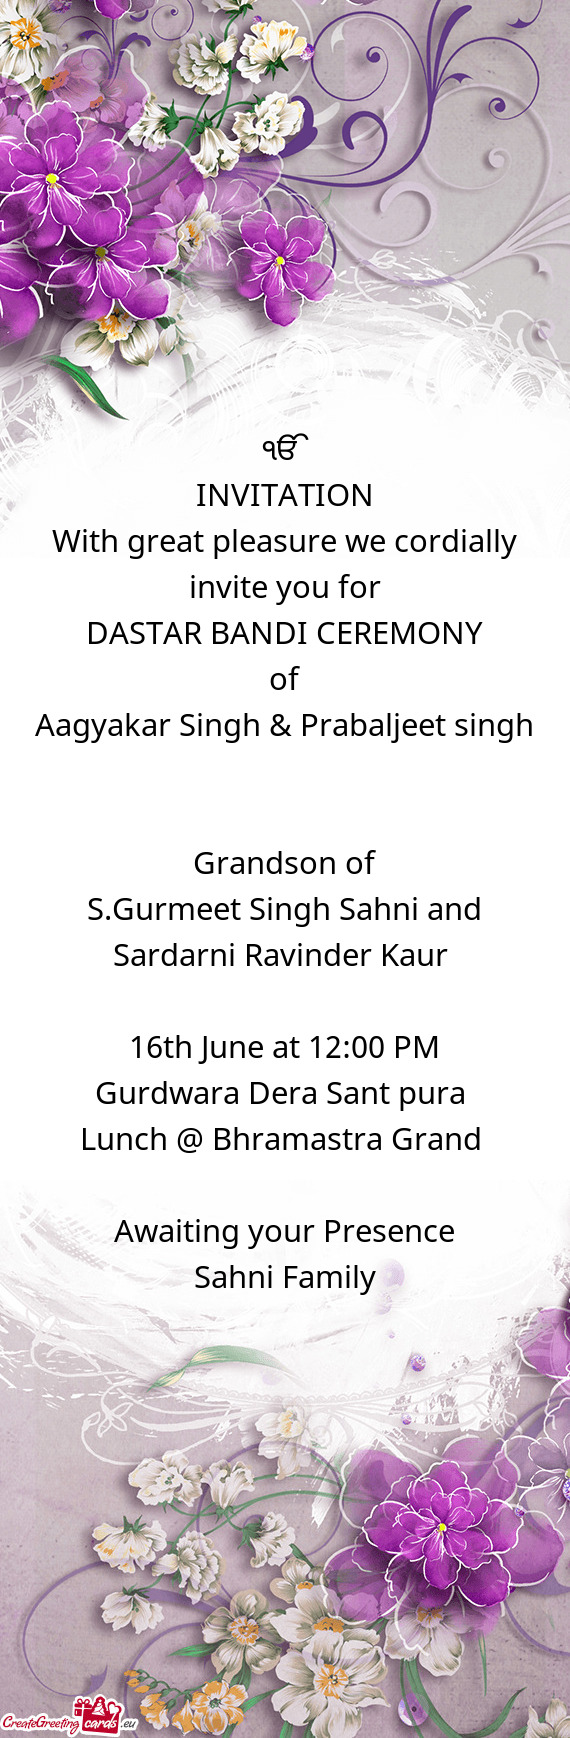 S.Gurmeet Singh Sahni and Sardarni Ravinder Kaur